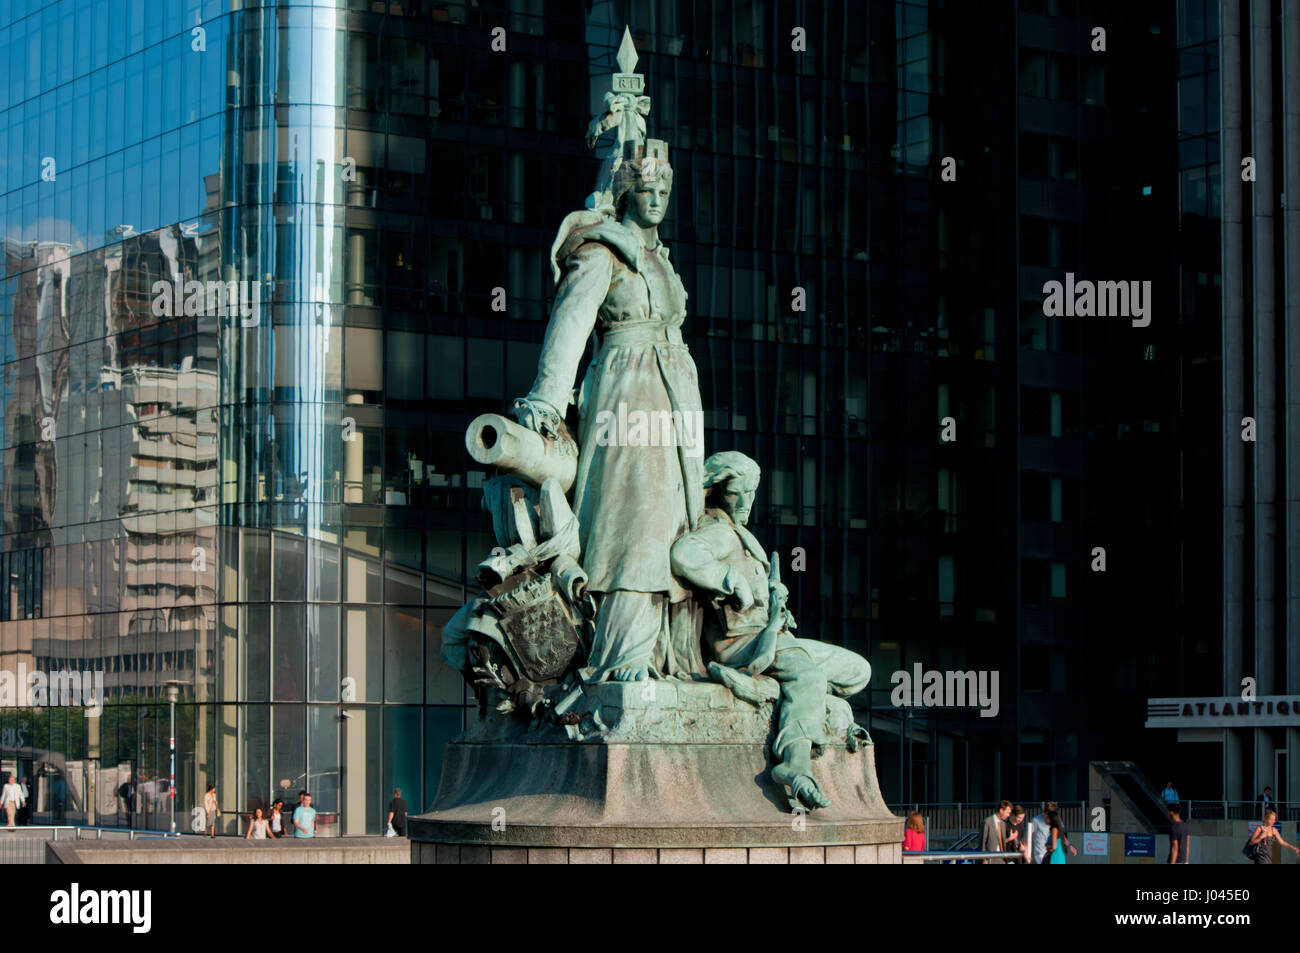 France, Paris, La Defense statue Stock Photo